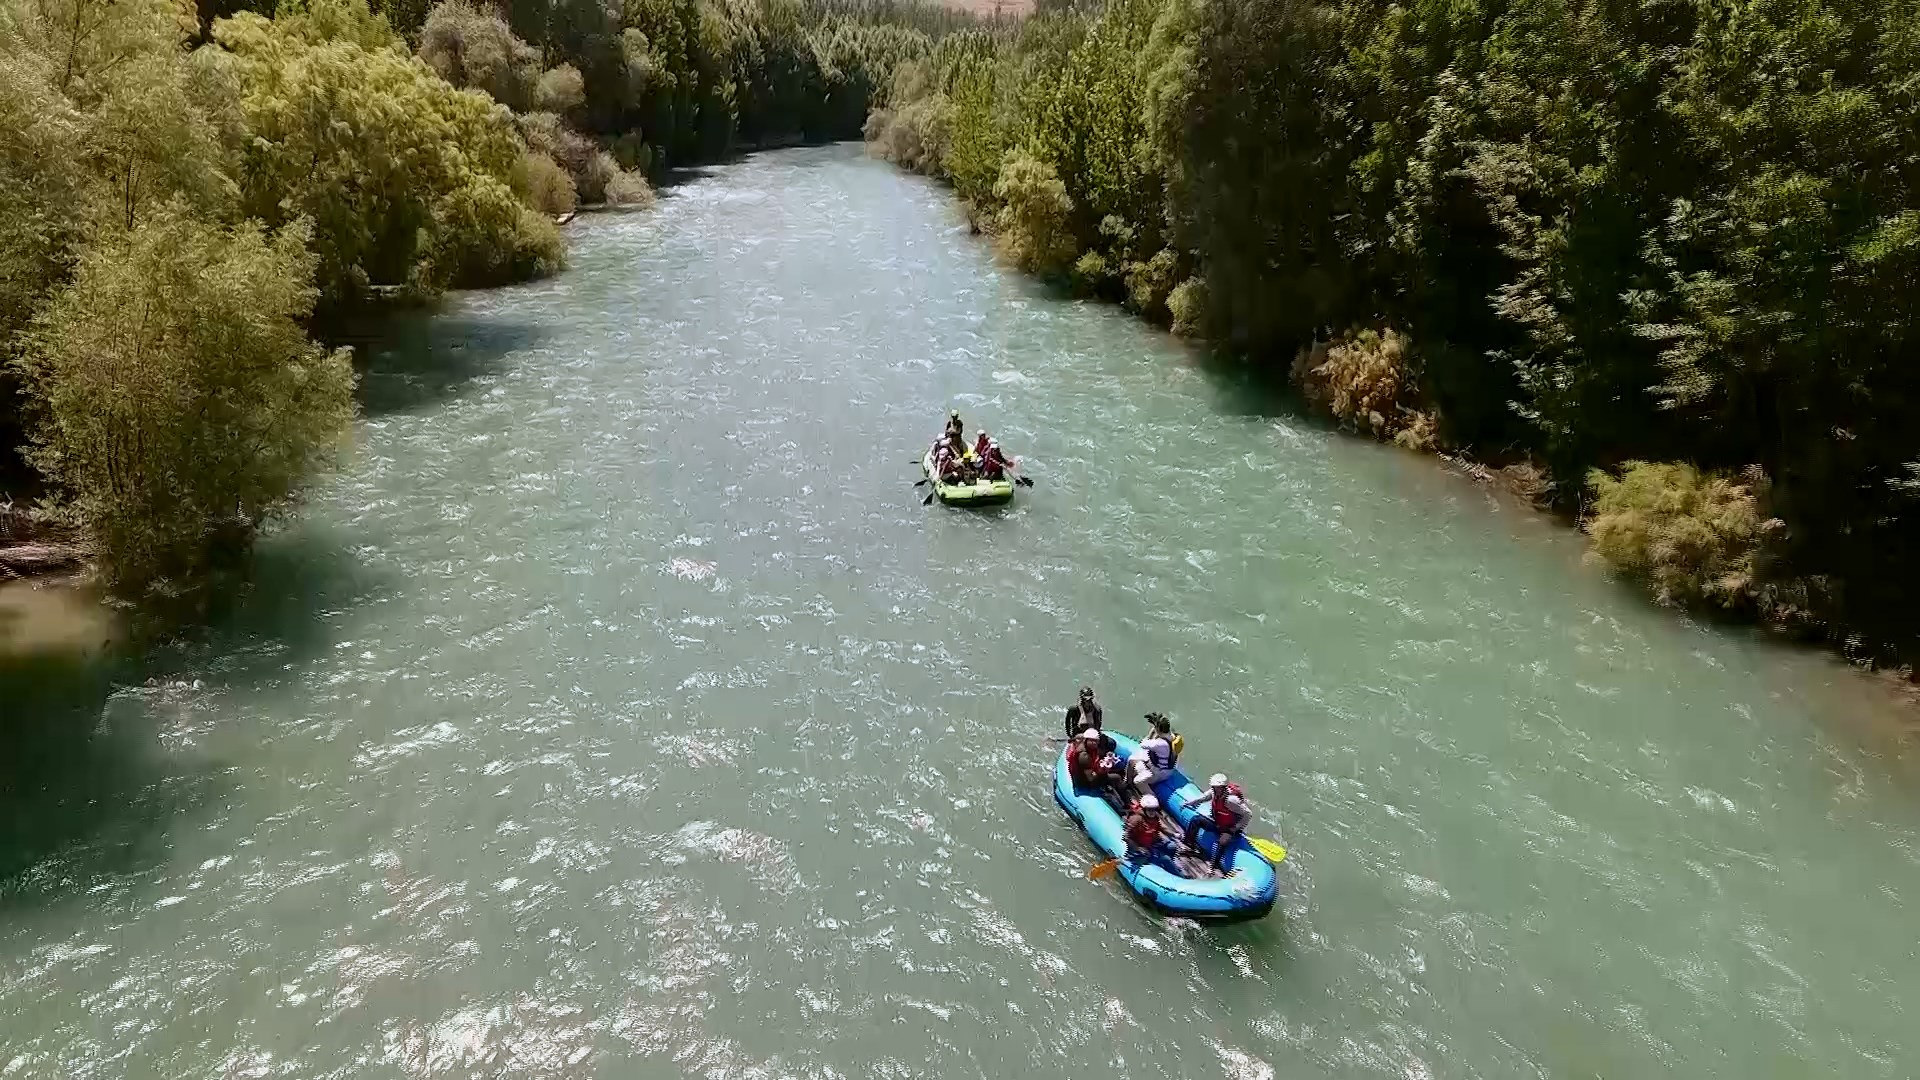 رفتینگ در زاینده رود, Rafting in Zayandehrud River